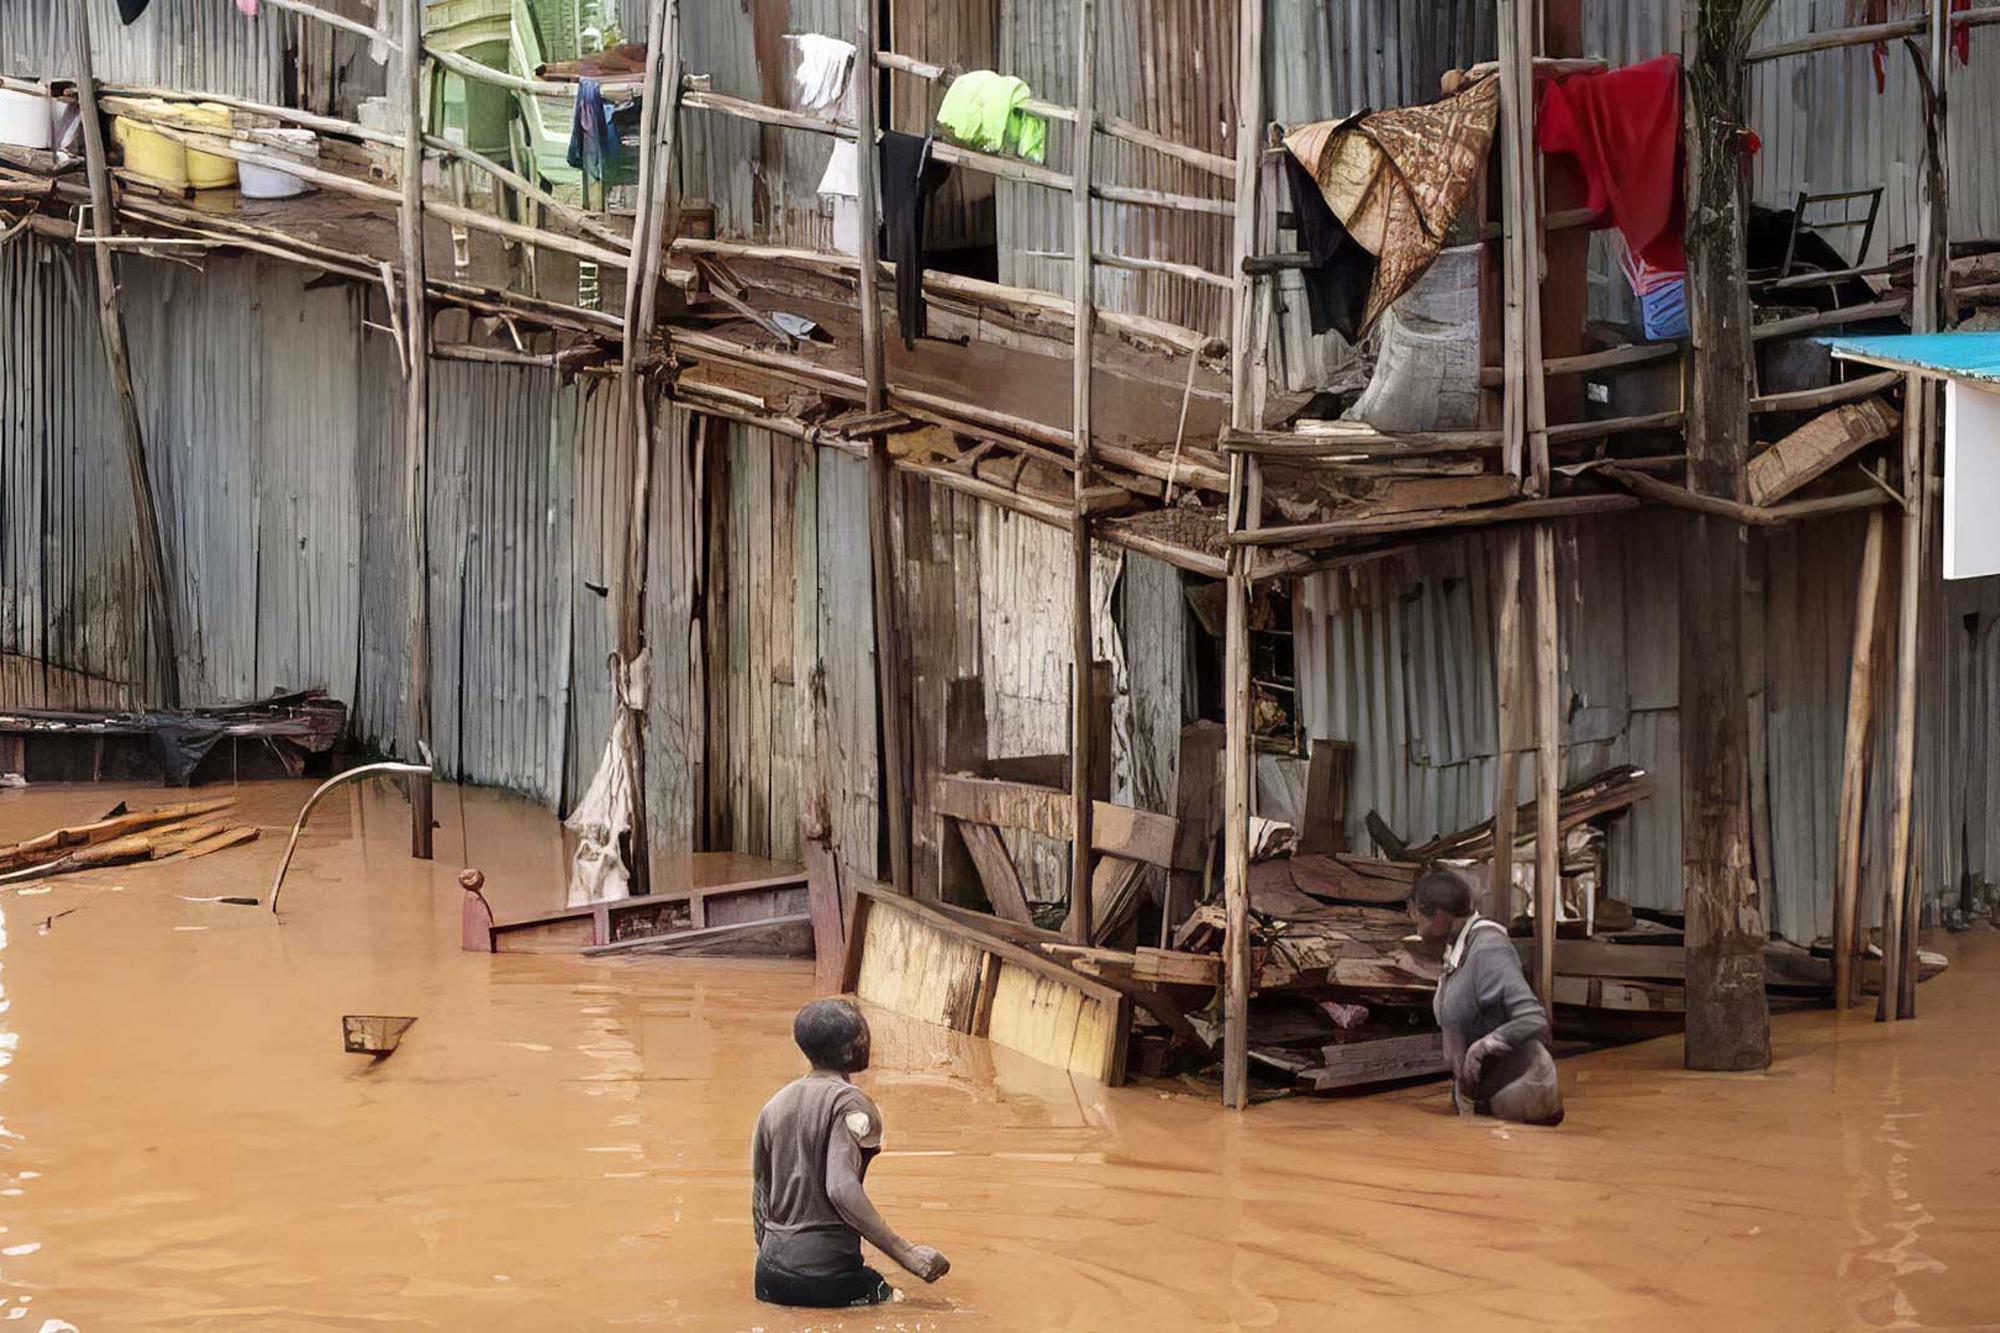 Översvämning i Kenya - två personer vadar i vatten som går upp till midjan, bakom dem syns en stor barack med en massa bråte och två våningar och loftgång. 